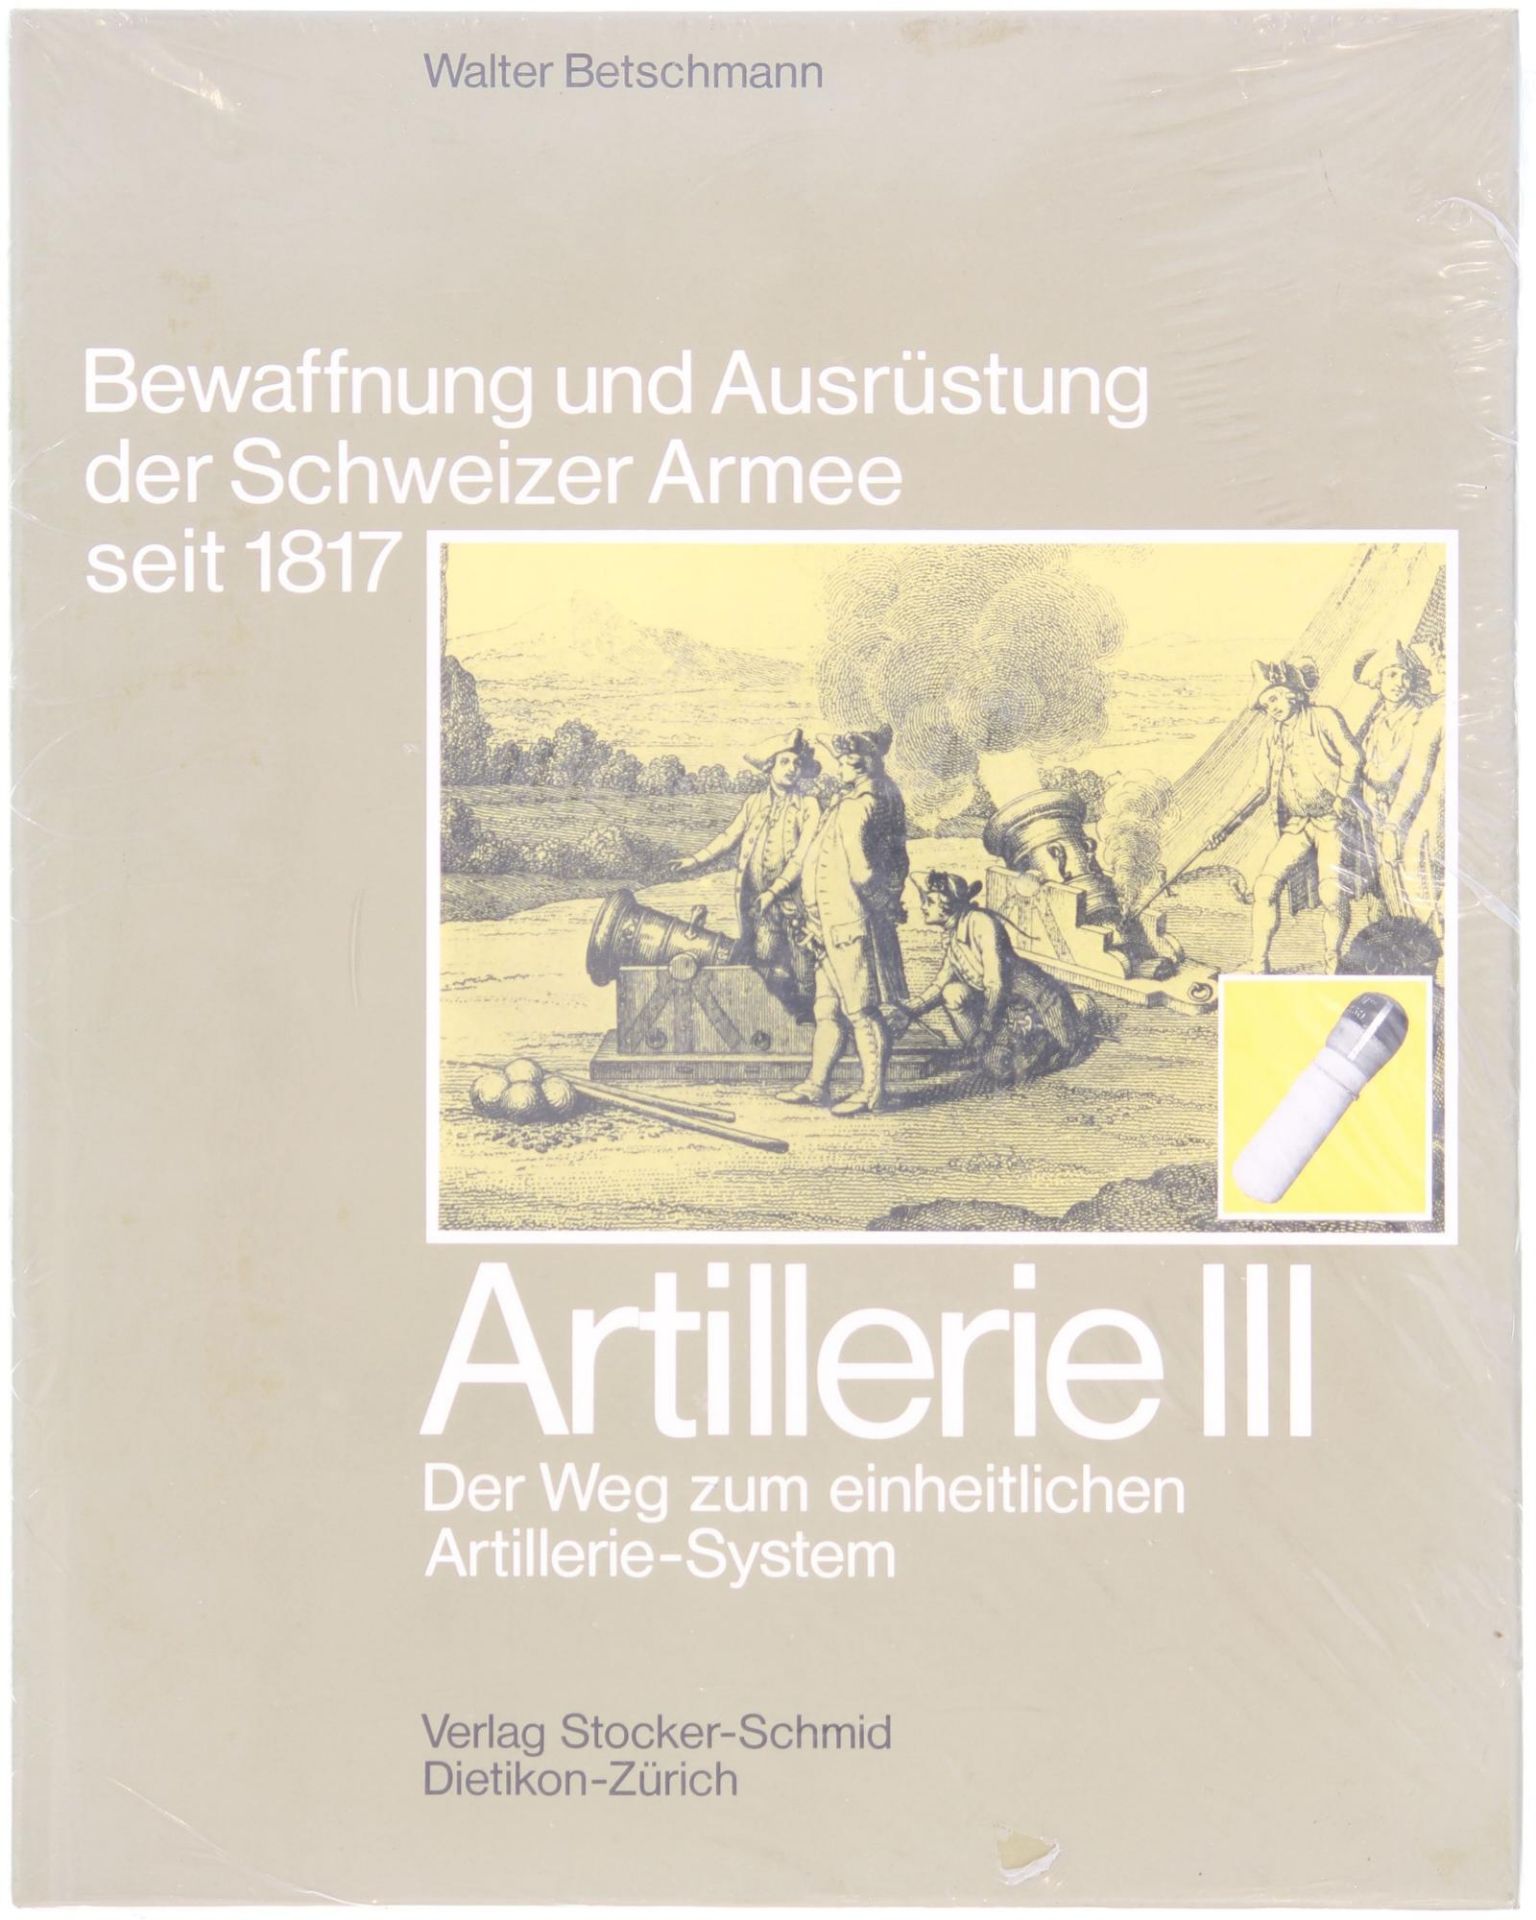 Buch, "Artillerie III, der Weg zum einheitlichen Artilleriesystem", aus der Reihe: Bewaffnung und